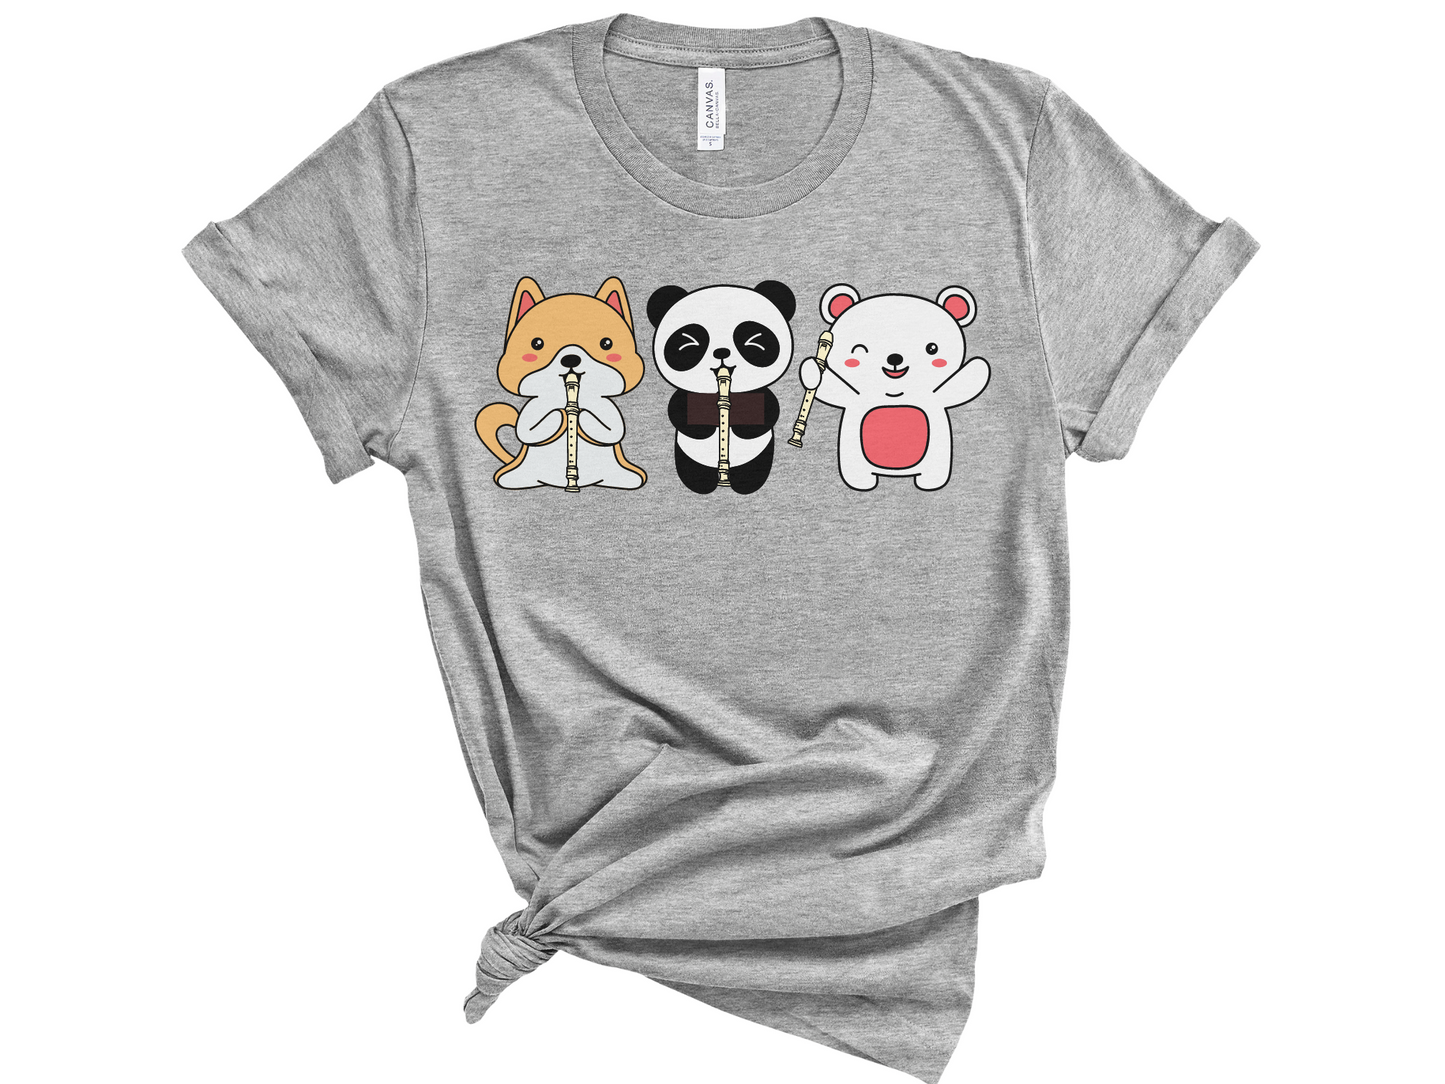 Cute Recorder Animals Kawaii Unisex T-Shirt